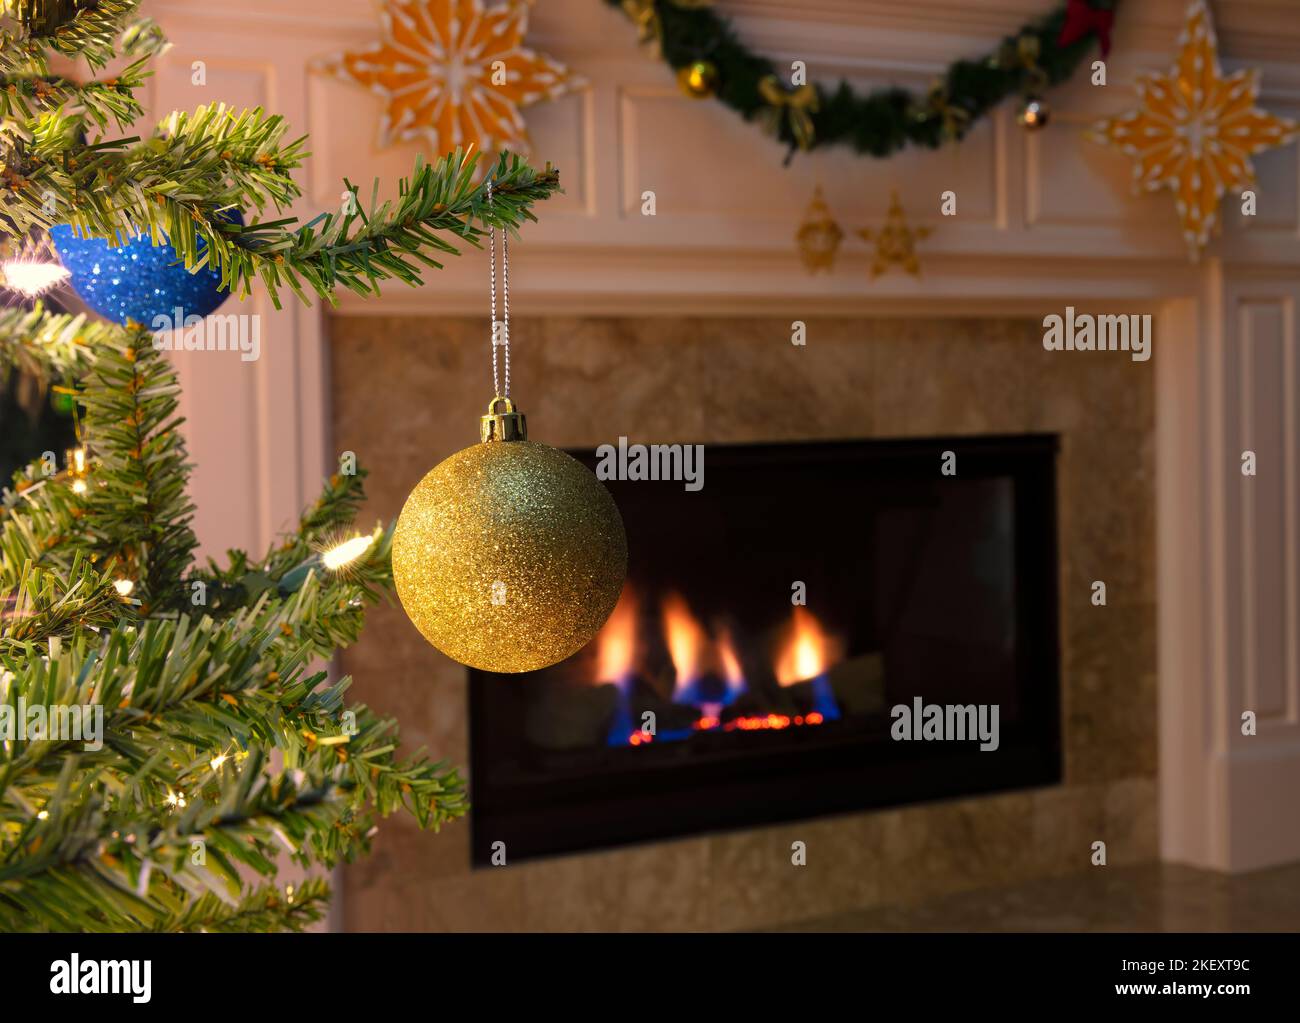 Gros plan d'un seul ornement de Noël doré suspendu d'un arbre avec foyer lumineux en arrière-plan Banque D'Images